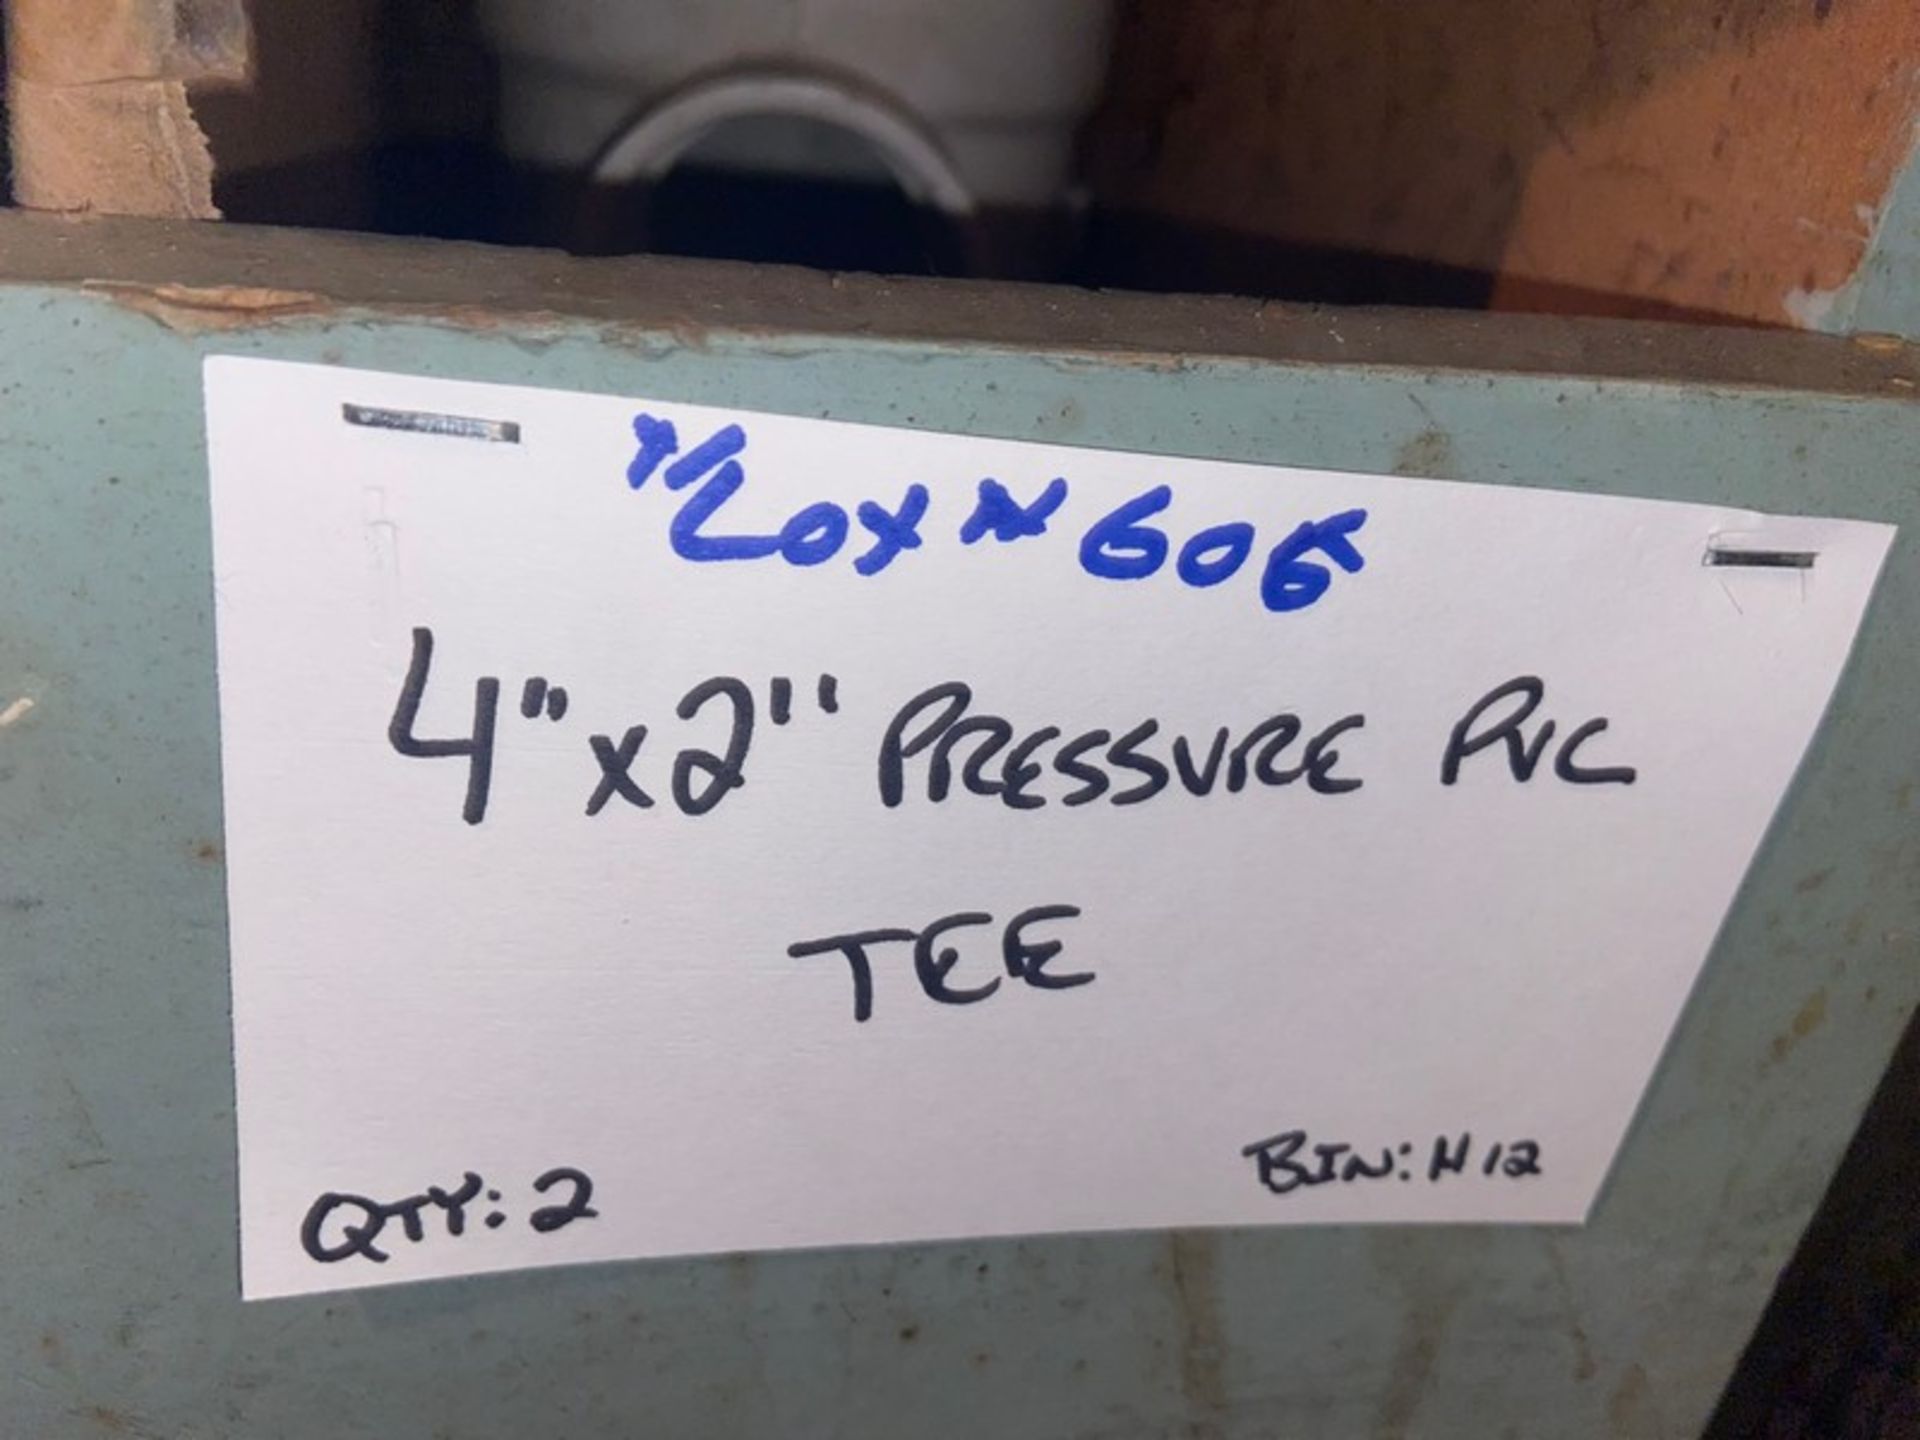 (4) 4” Pressure PVC TEE (Bin:H12); Includes (1) 4”x3” Pressure PVC TEE (Bin:H12); (1) 4”x2” Pressure - Image 7 of 7